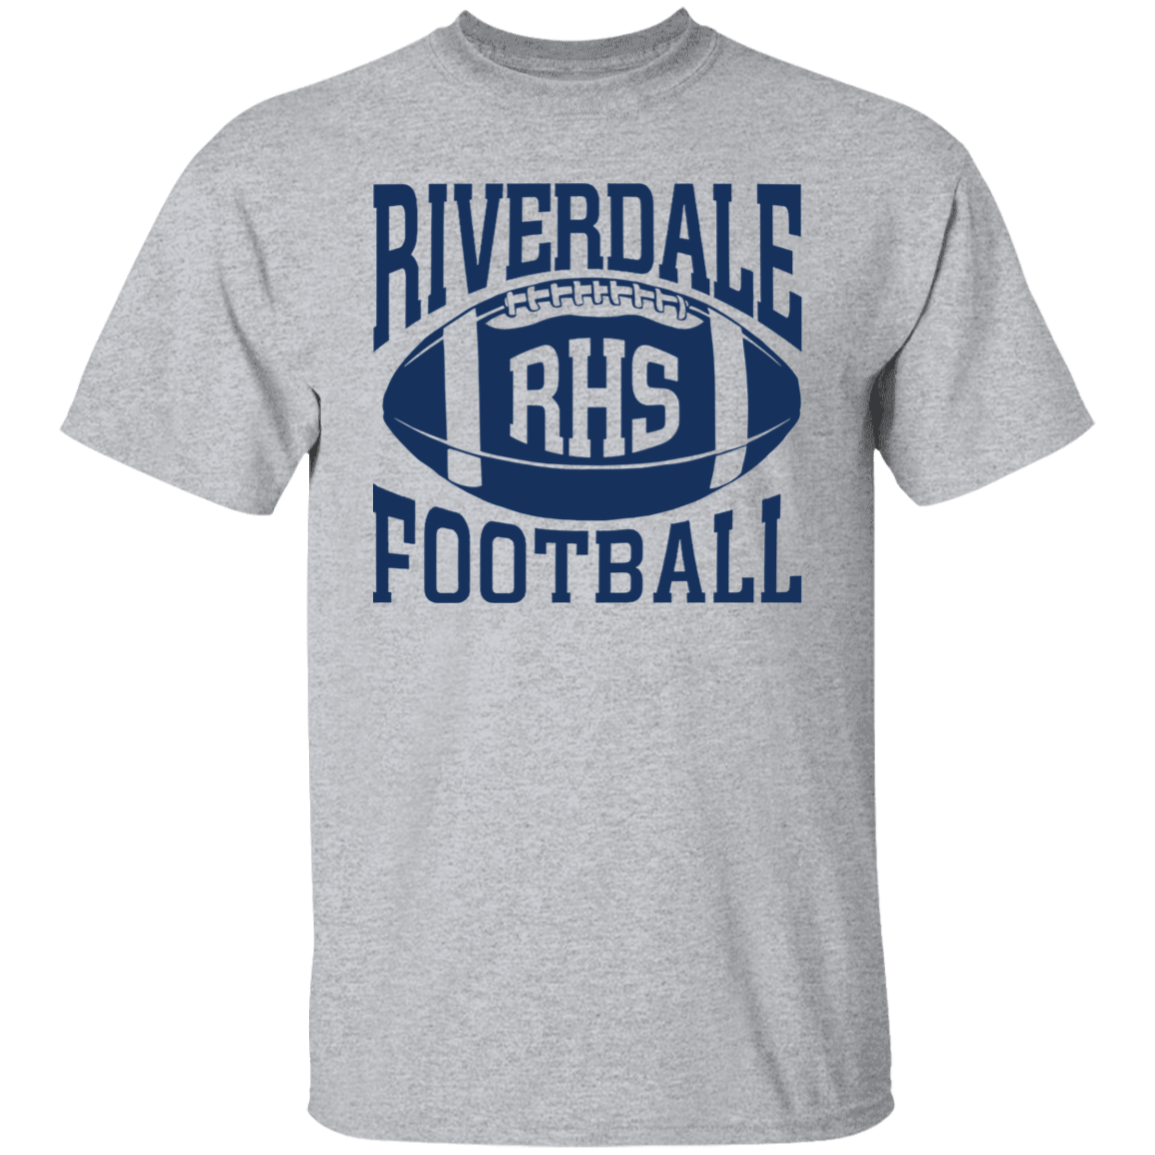 Riverdale RHS Football Unisex T-Shirt, Sweatshirt, Hoodie